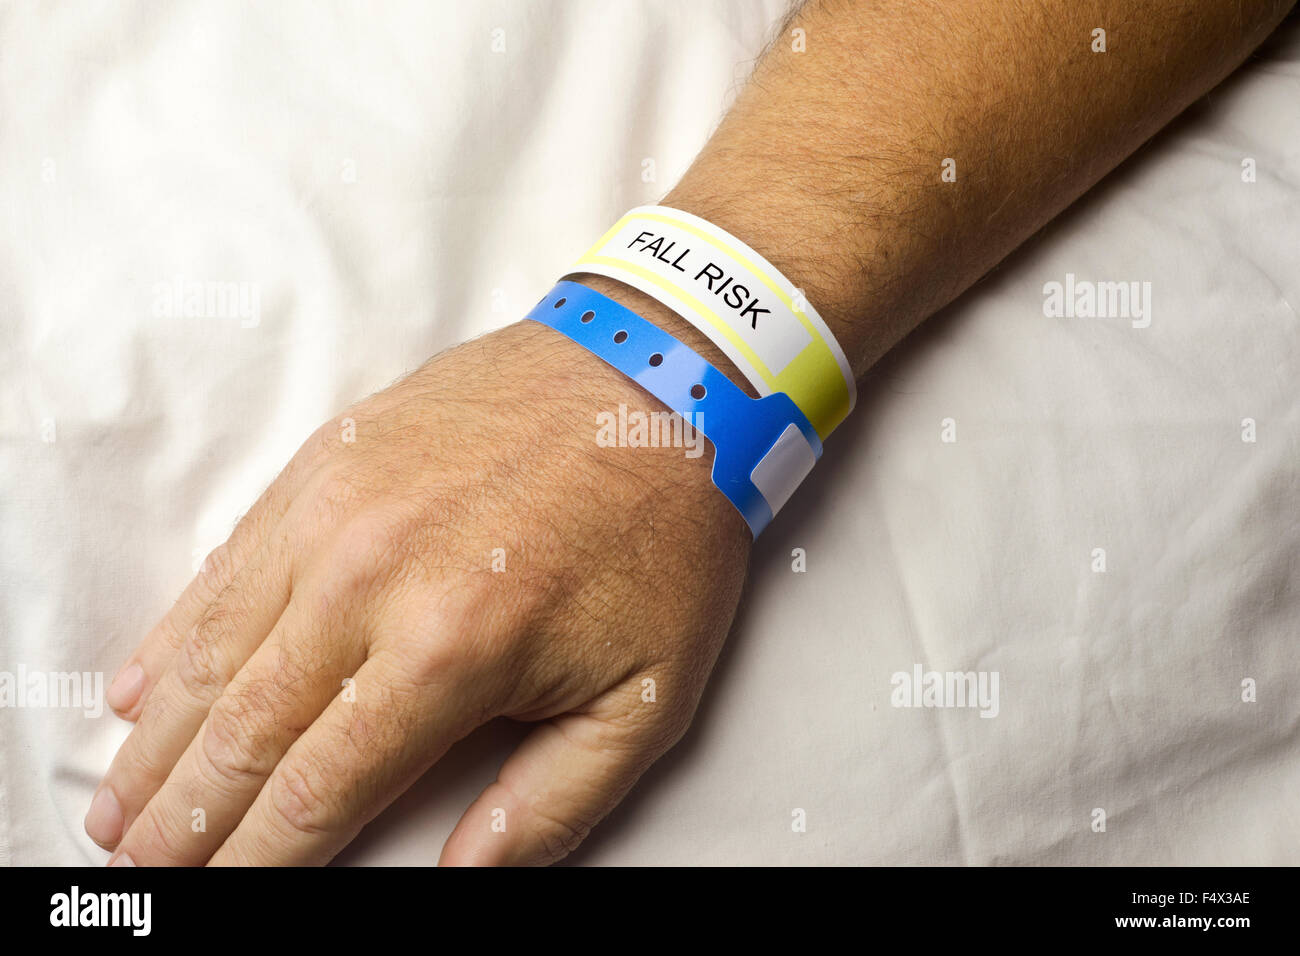 Paciente hospitalizado con riesgo de caída la pulsera en la muñeca. Foto de stock